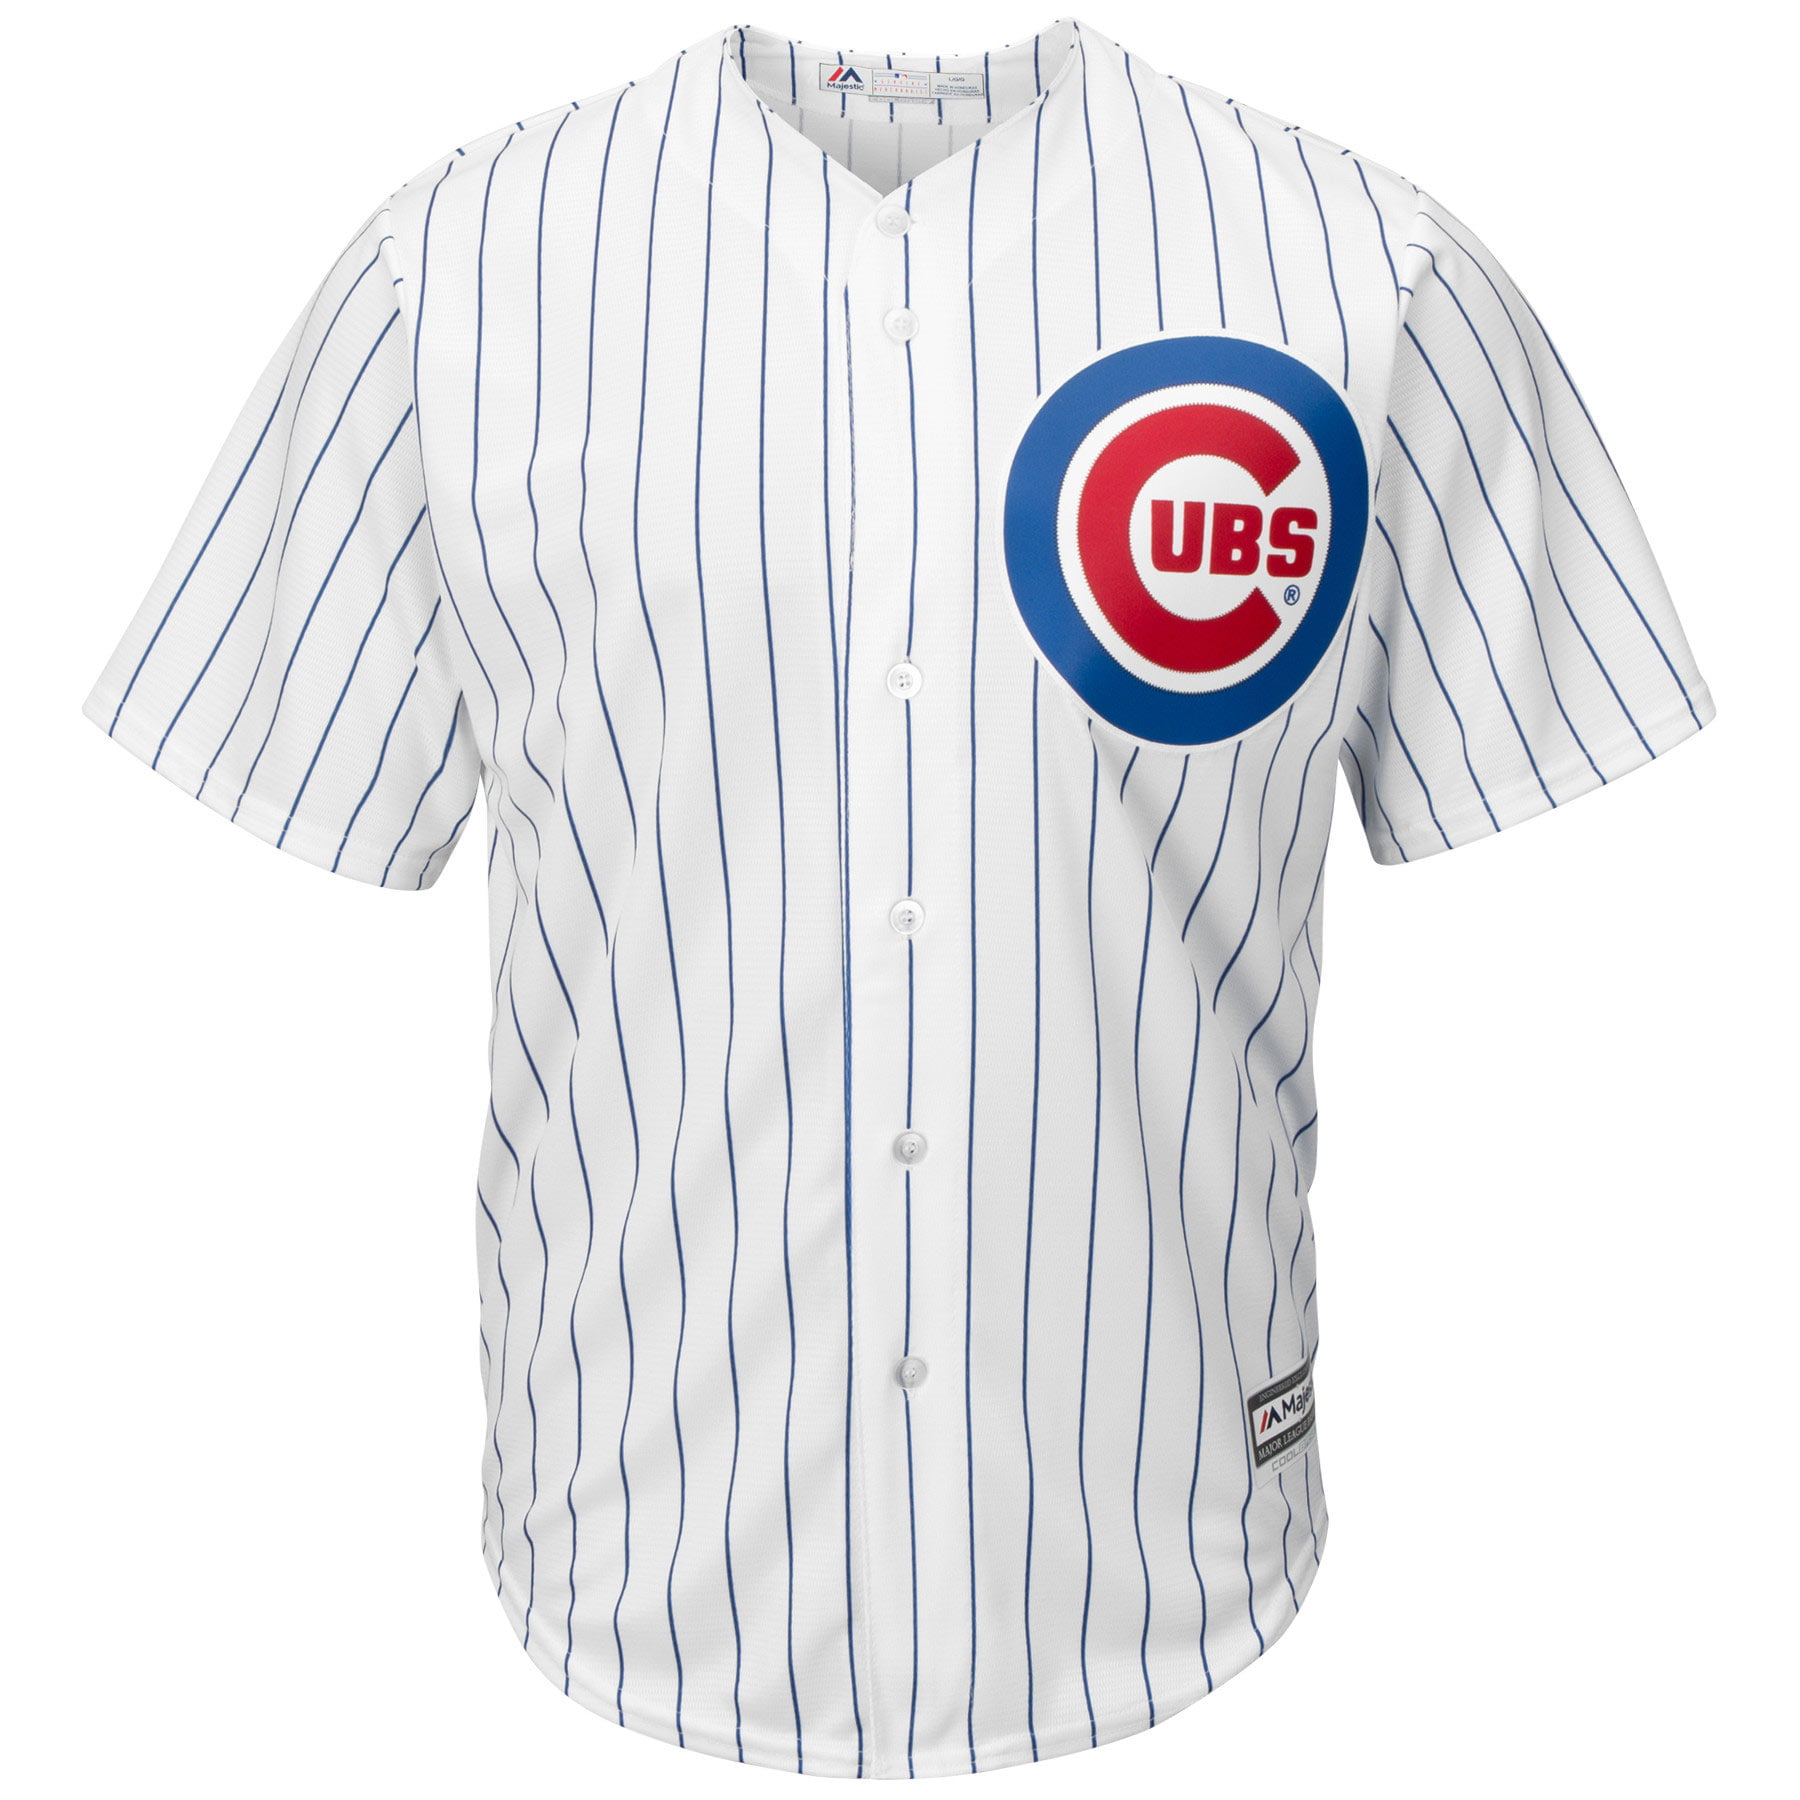 خلفيات تصميم سوداء Anthony Rizzo #44 Chicago Cubs Majestic Big & Tall Cool Base ... خلفيات تصميم سوداء